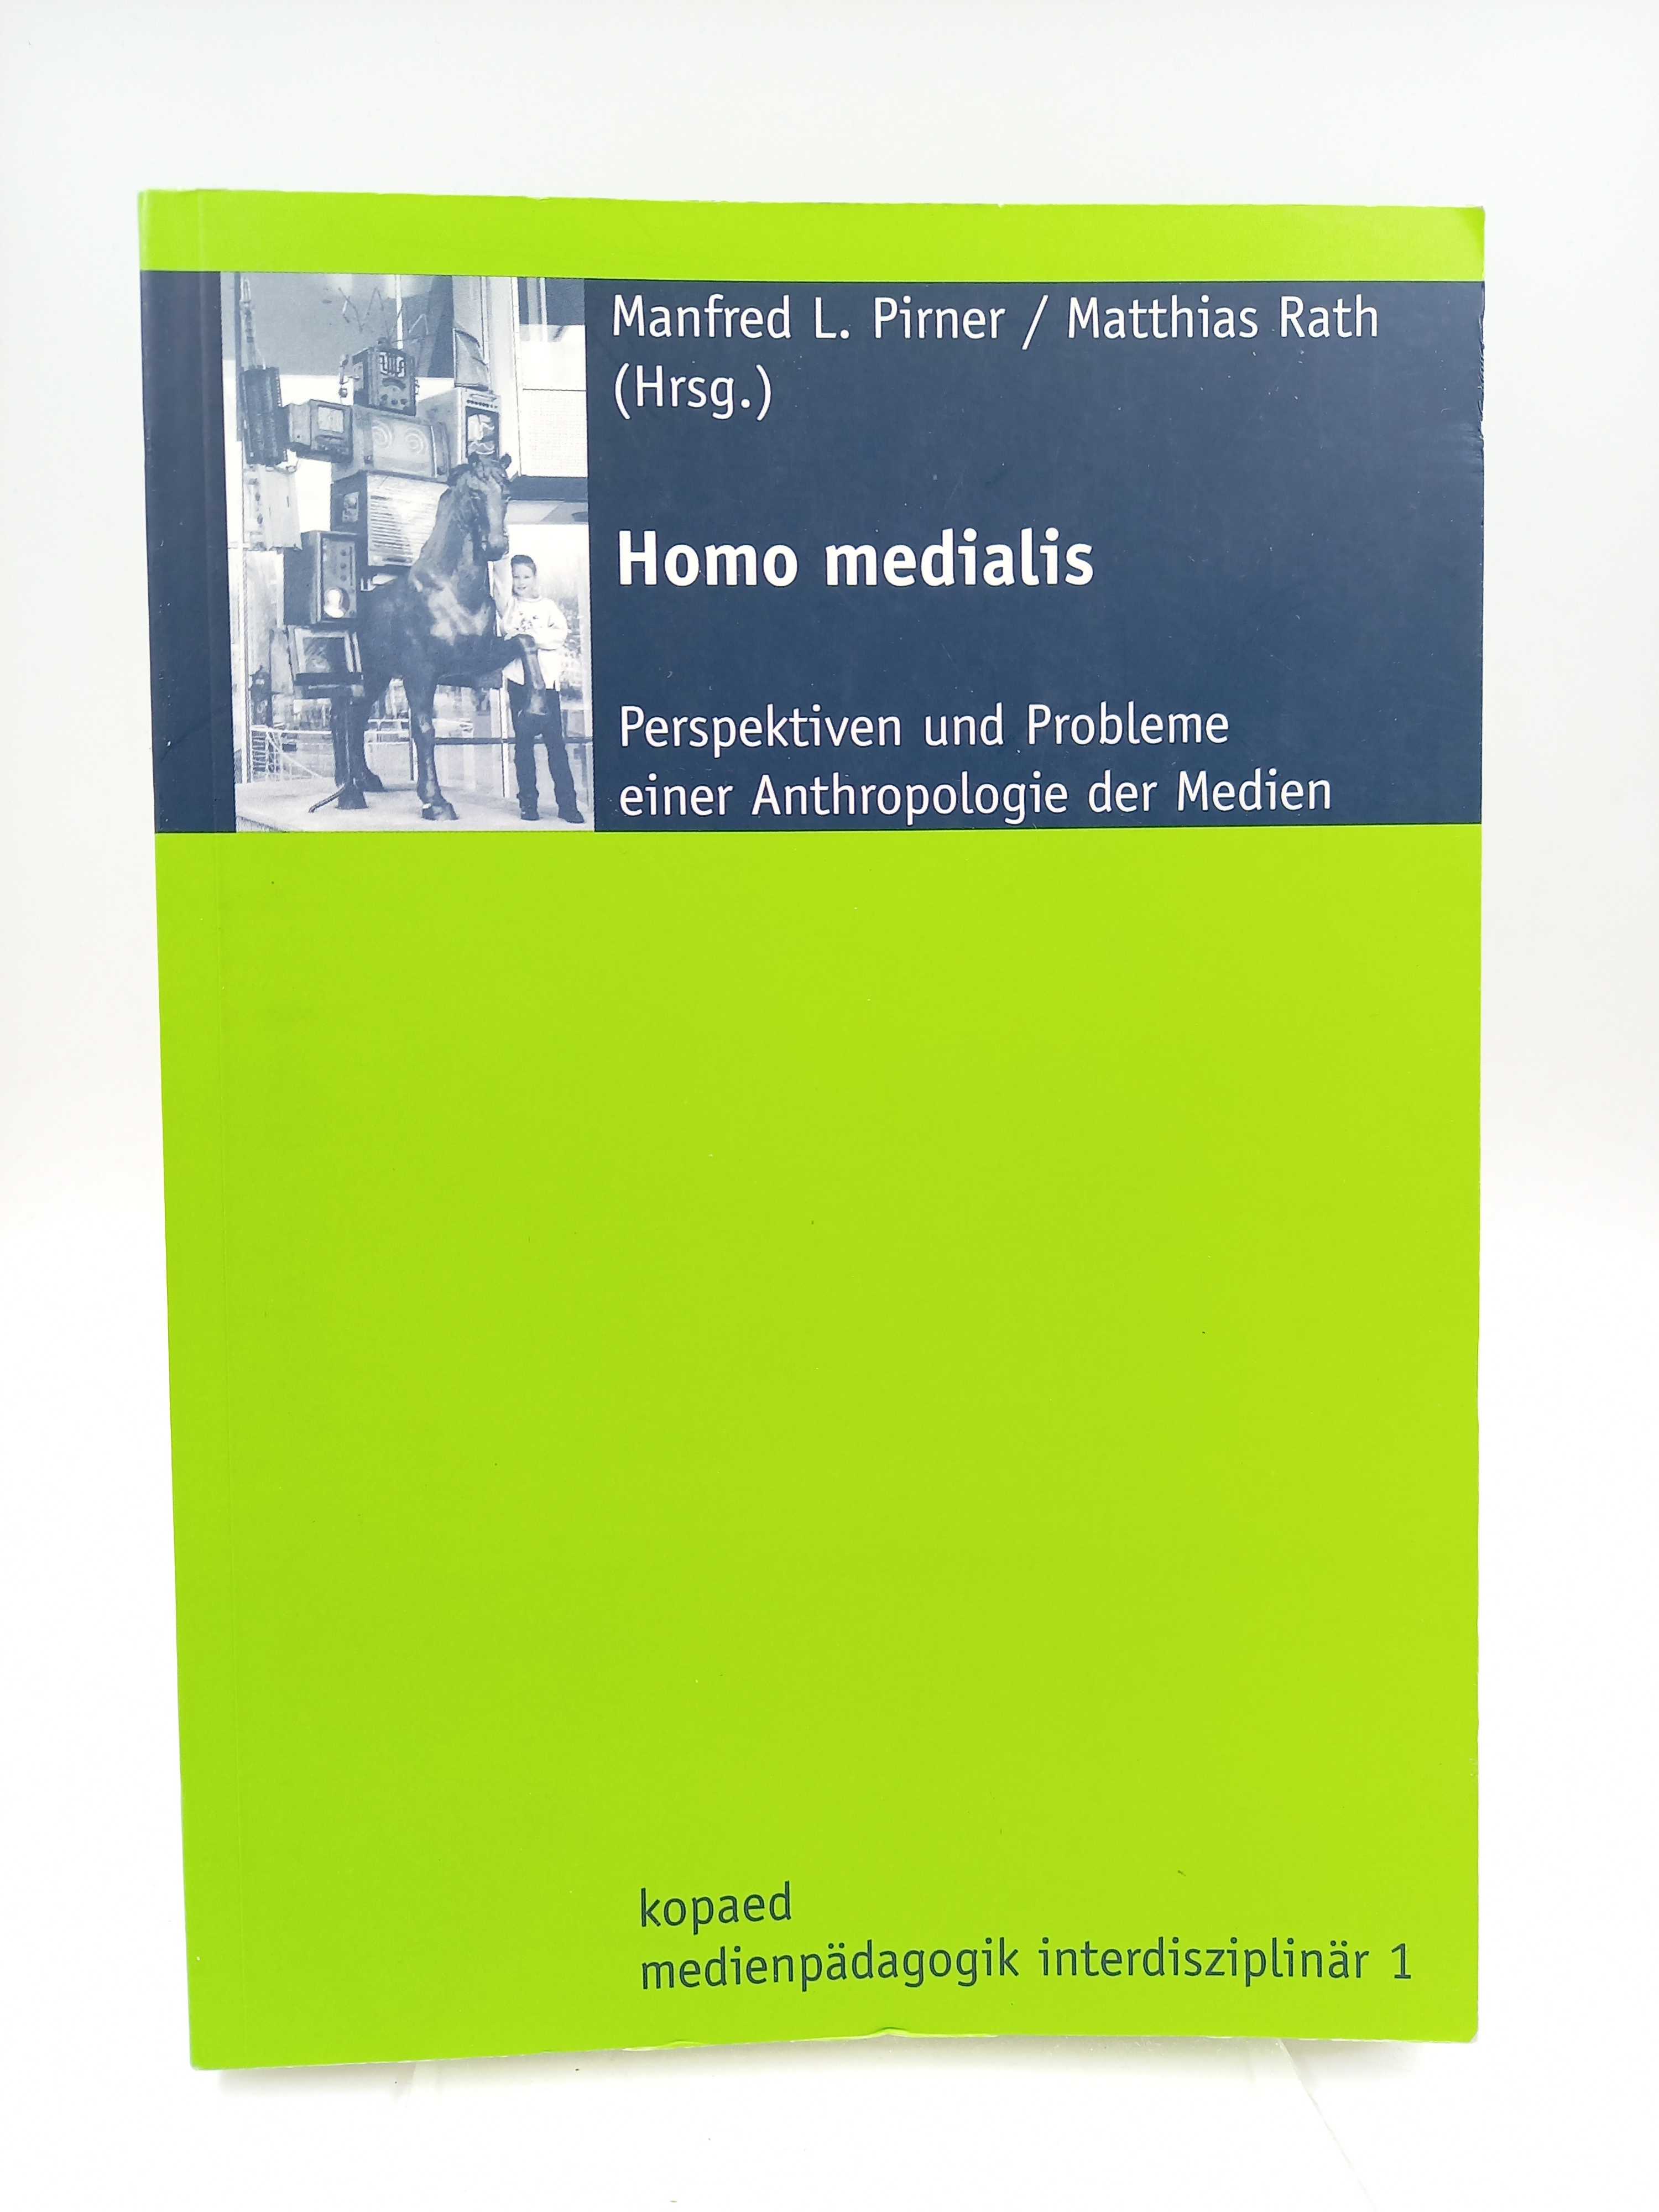 Homo medialis. Perspektiven und Probleme einer Anthropologie der Medien - Pirner, Manfred L. / Matthias Rath (Hgg.)